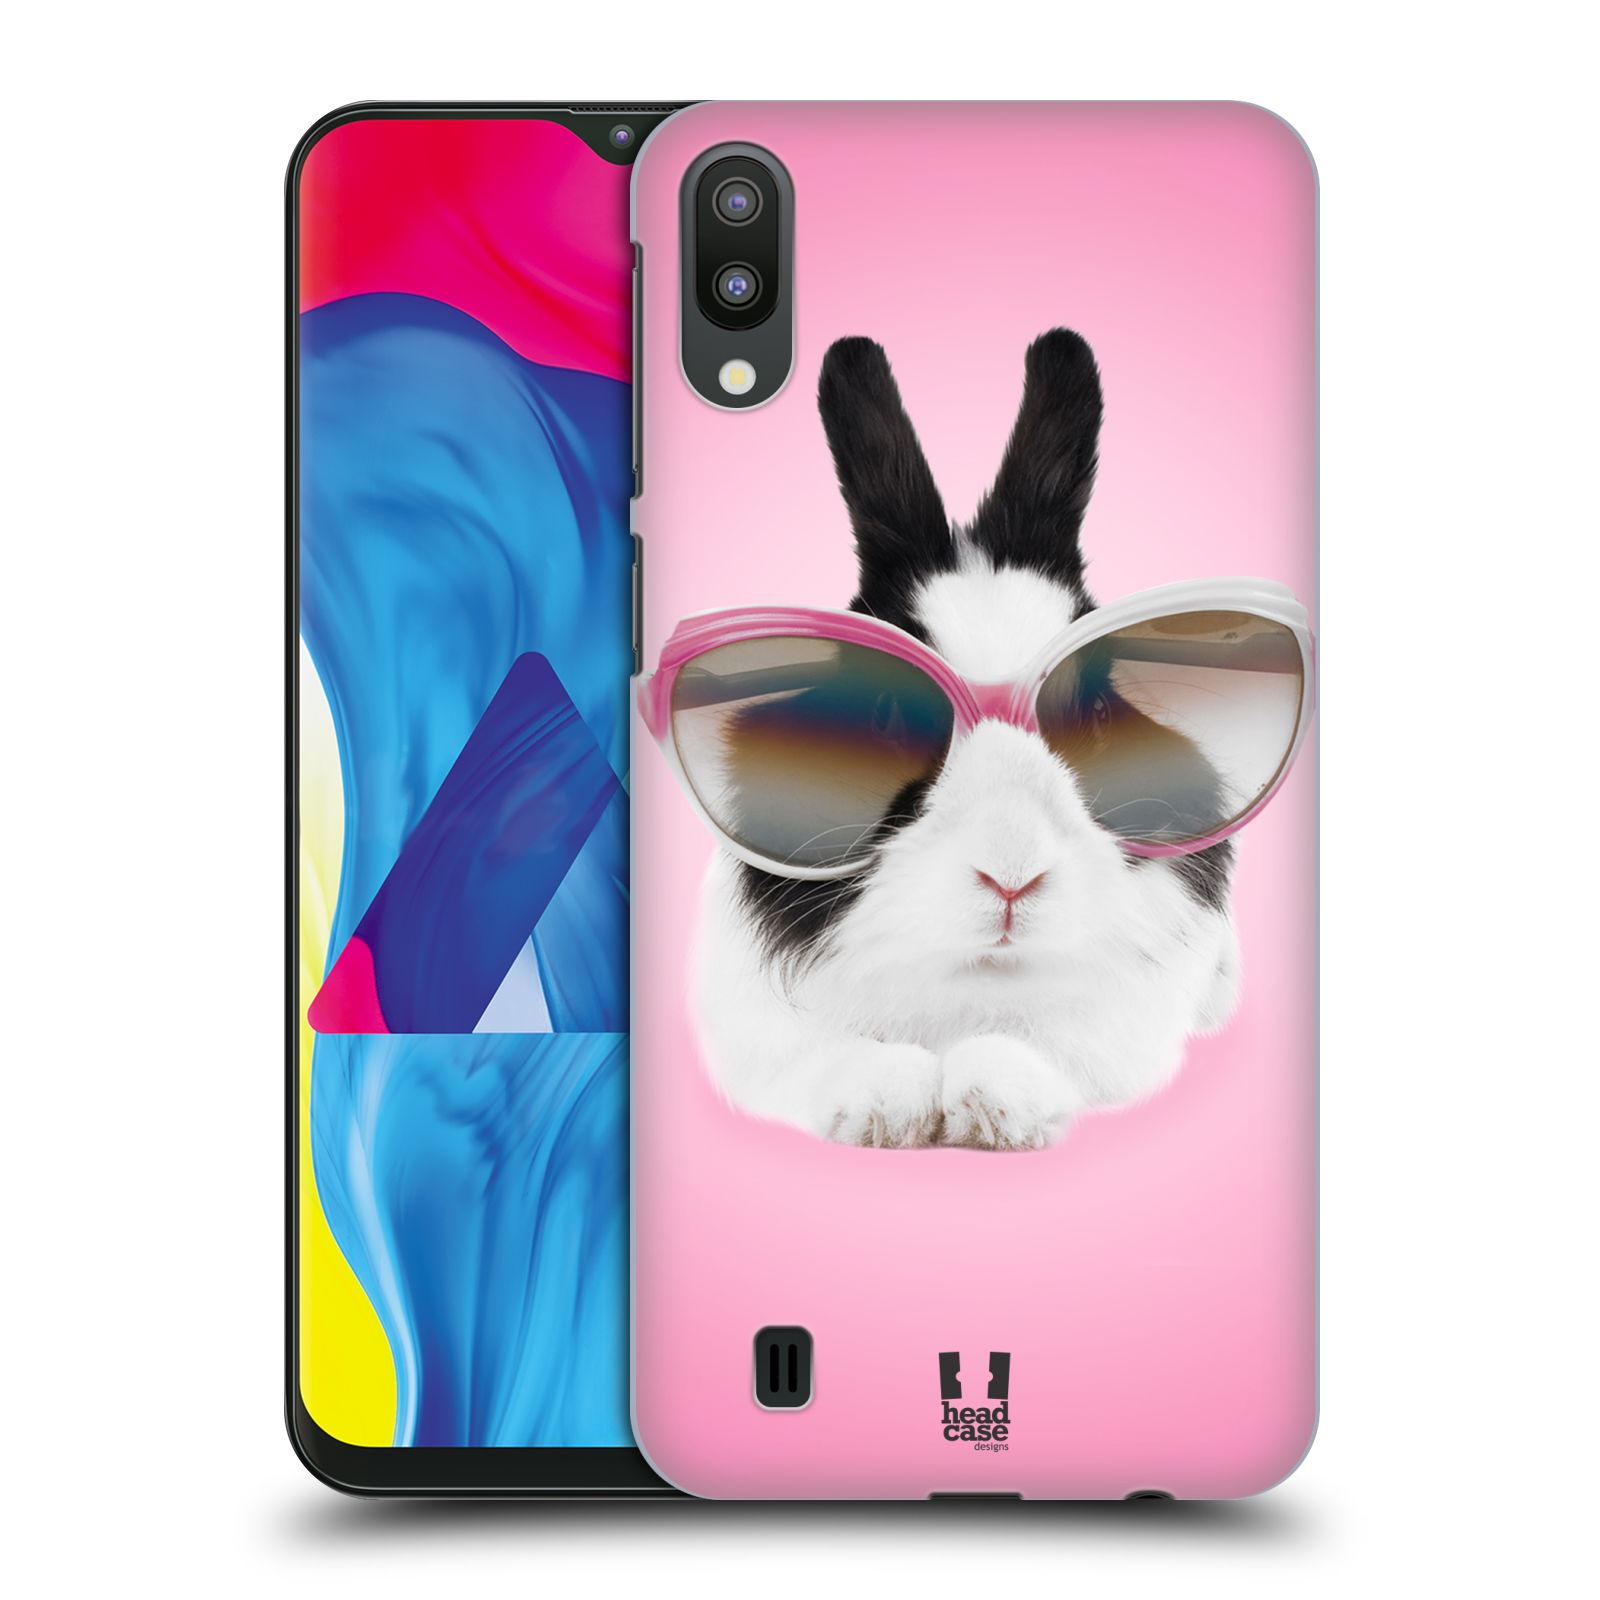 Plastový obal HEAD CASE na mobil Samsung Galaxy M10 vzor Legrační zvířátka roztomilý králíček s brýlemi růžová